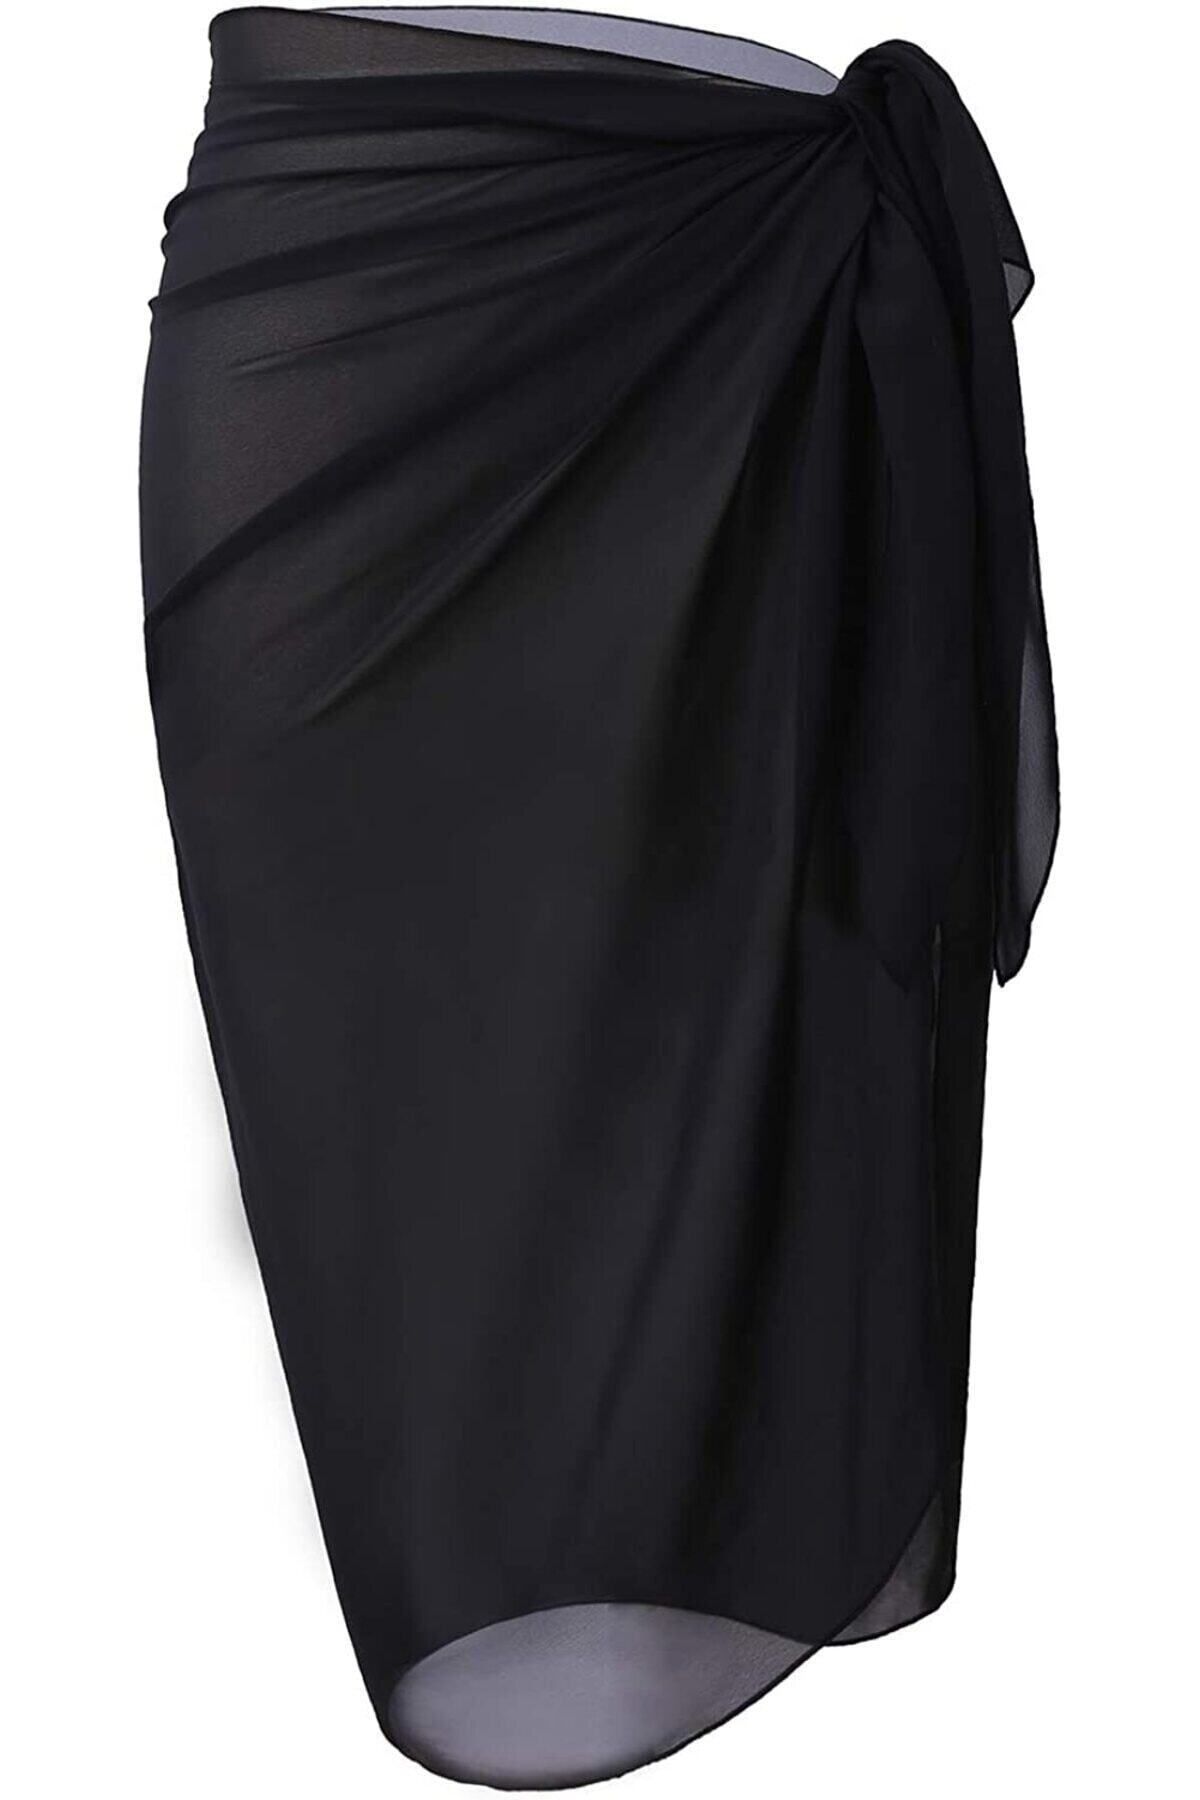 Star Siyah Uzun Pareo Kadın Plaj Elbisesi Yeni Sezon Tül Transparan